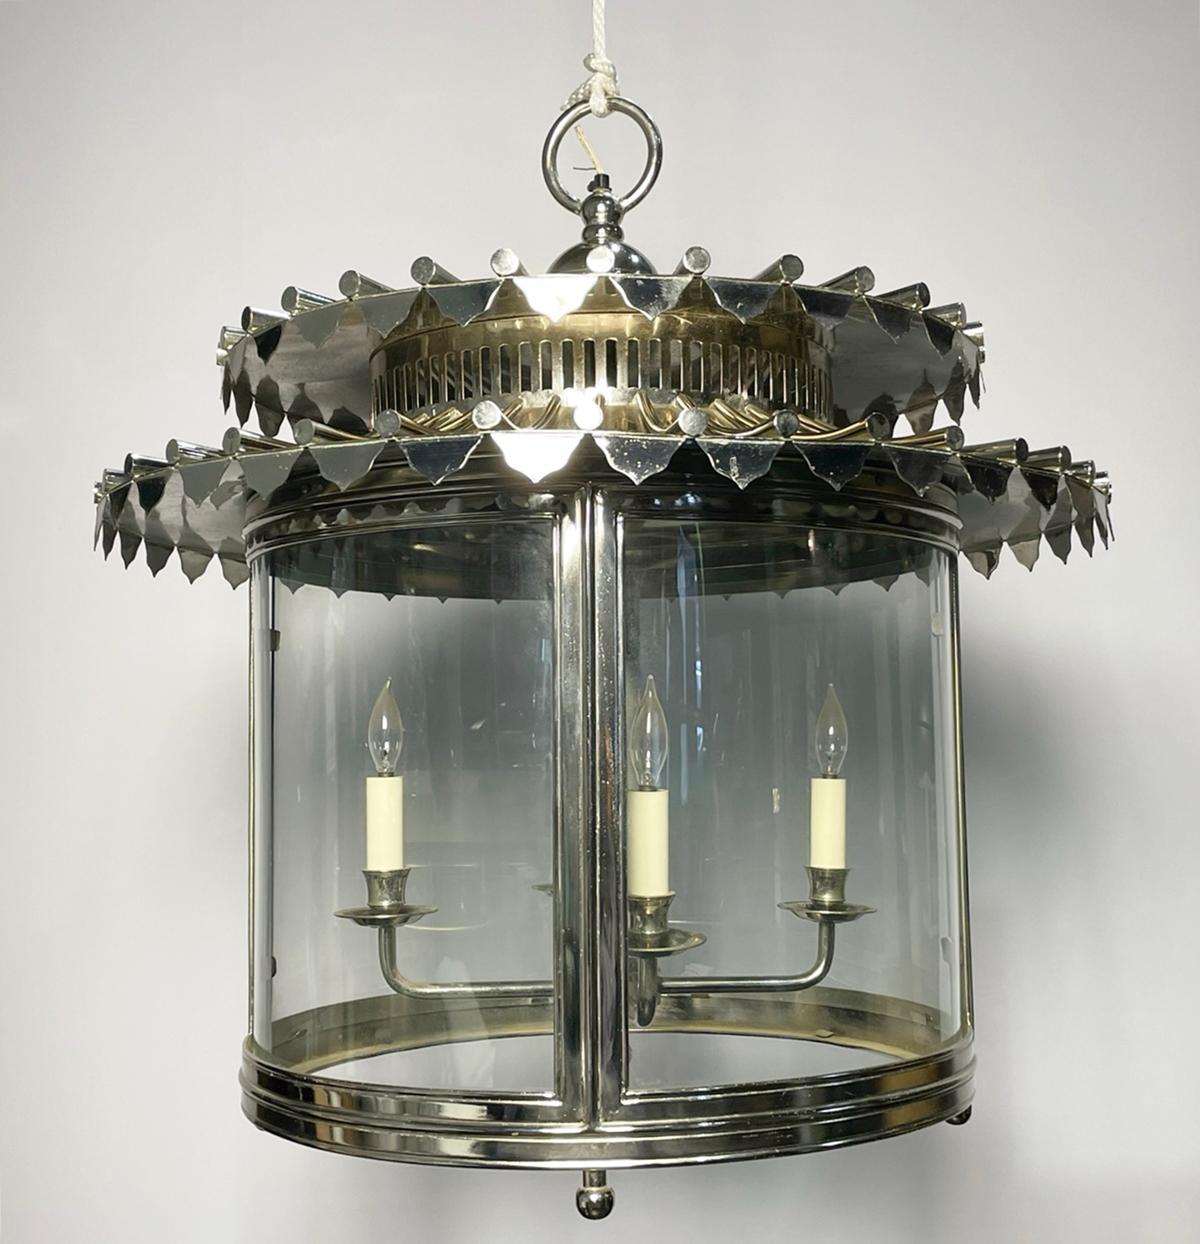 Voici l'exquis lustre en nickel et verre, fabriqué en Angleterre par le célèbre designer Charles Edwards.

 Ce superbe luminaire affiche un design sophistiqué et élégant, avec quatre bougies suspendues au sommet.
 Le lustre est fabriqué à la main en